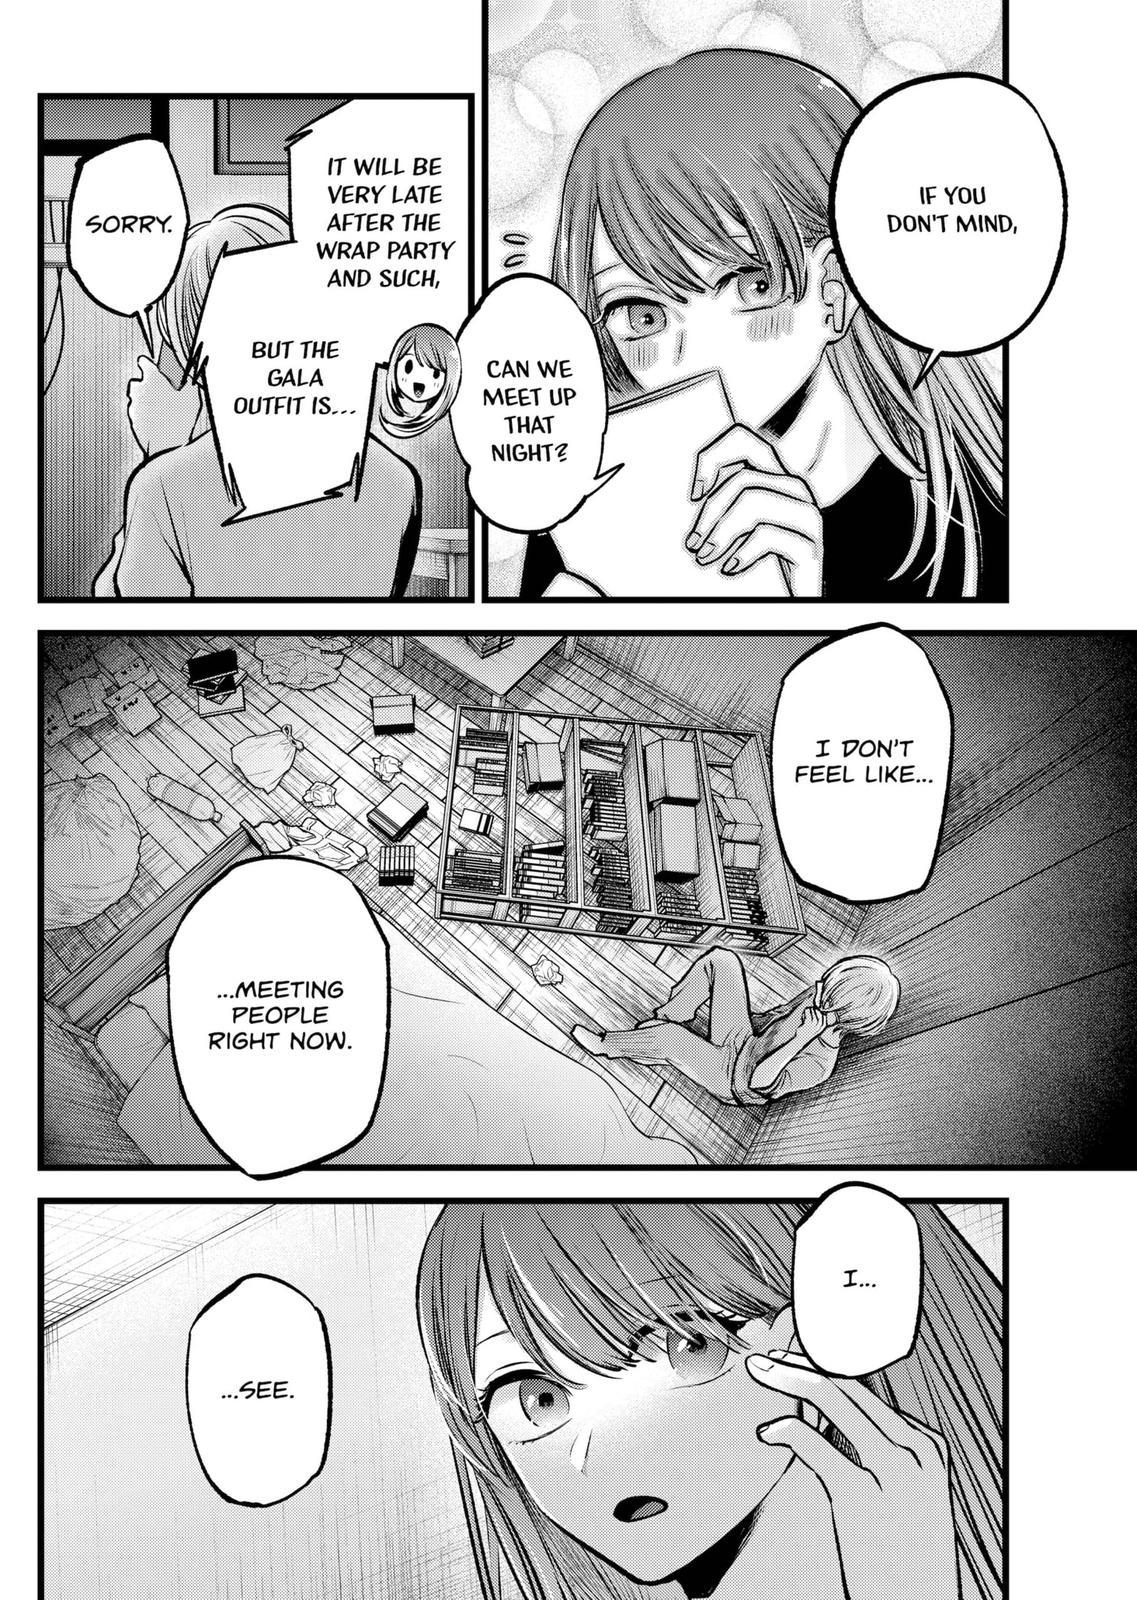 Oshi no ko, Chapter 123 - Oshi no ko Manga Online